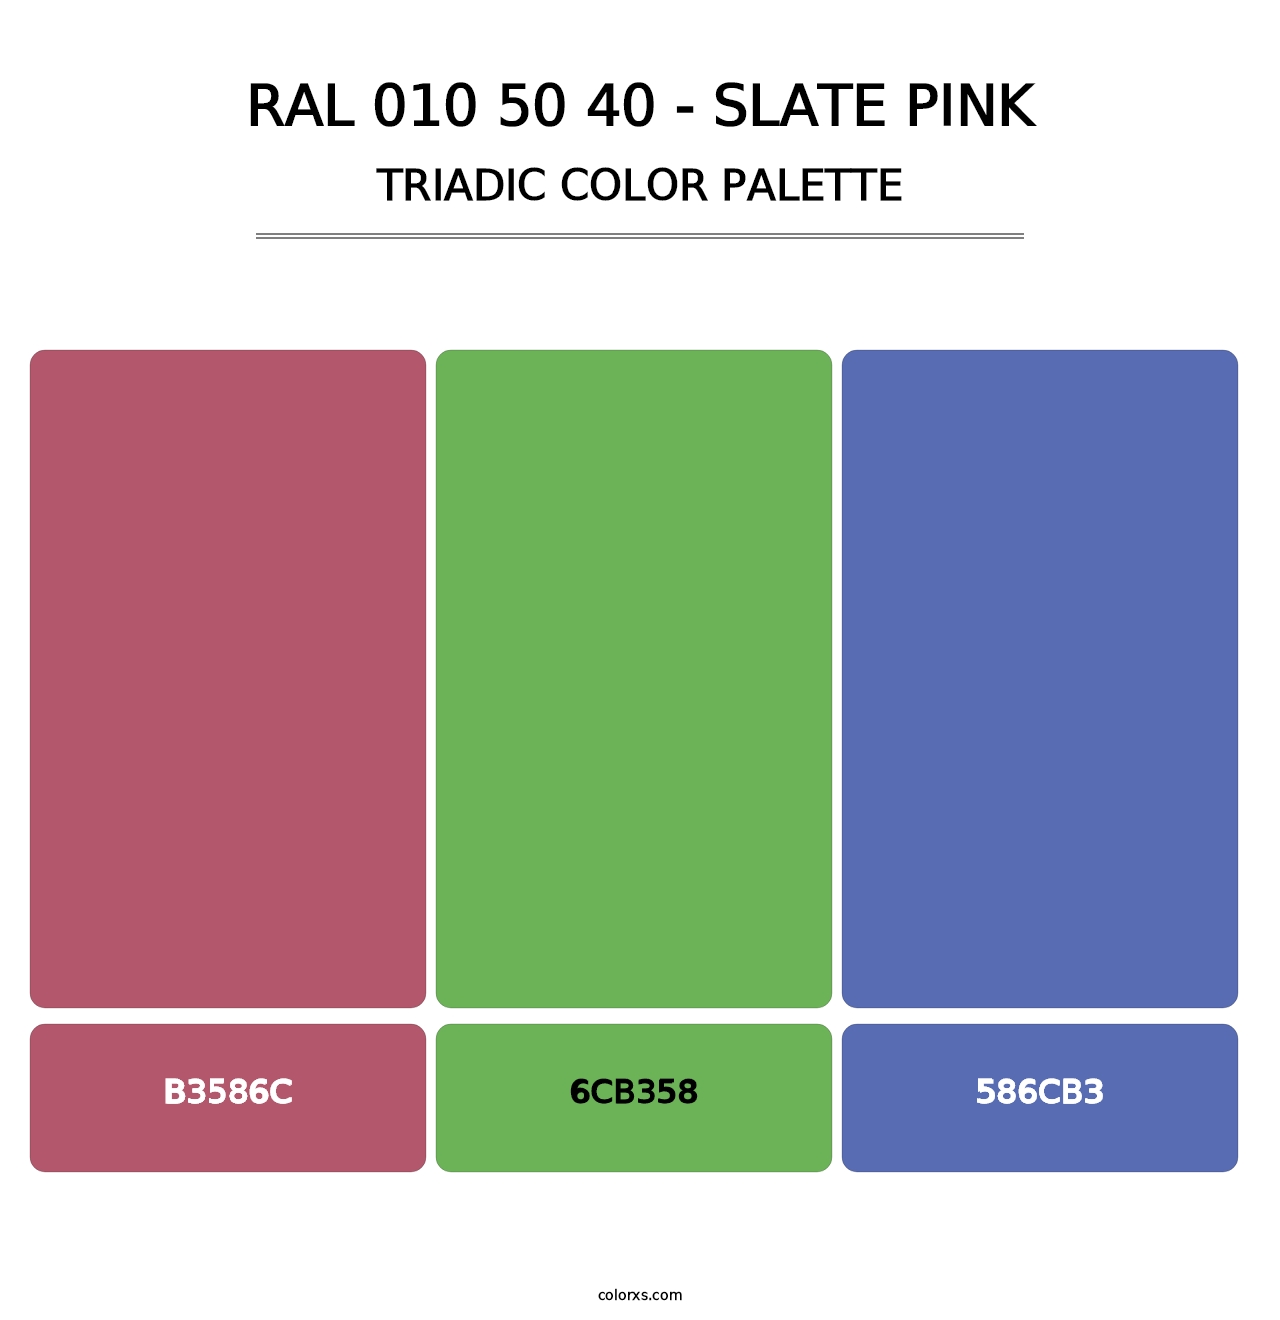 RAL 010 50 40 - Slate Pink - Triadic Color Palette